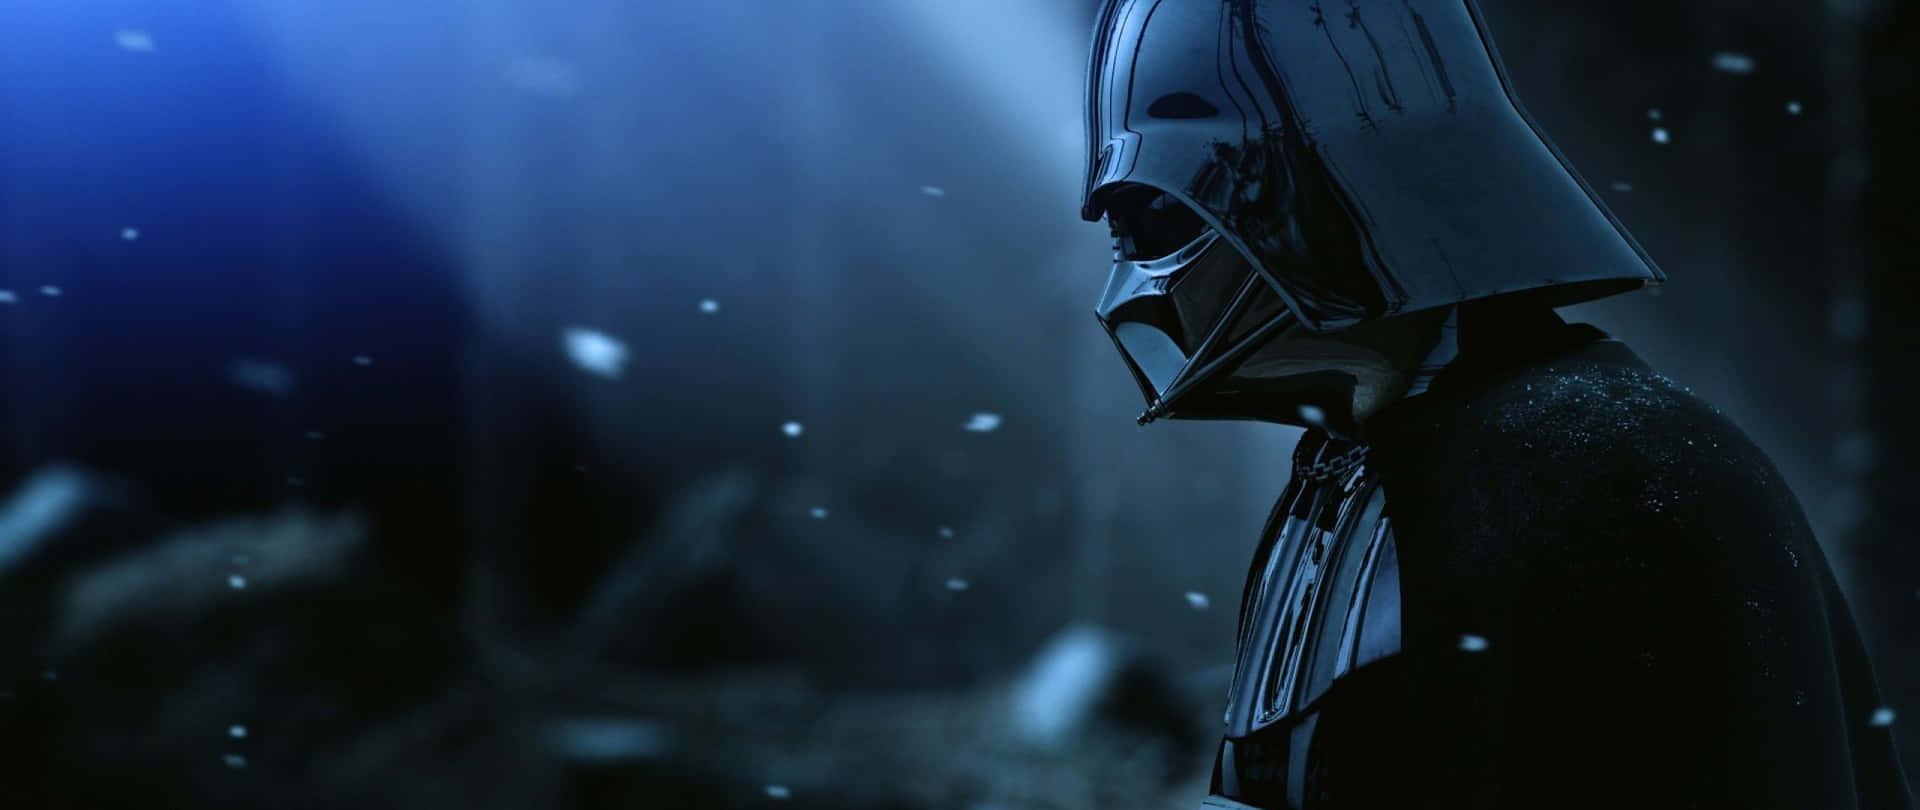 Darth Vader Star Wars 2560 X 1080 Wallpaper